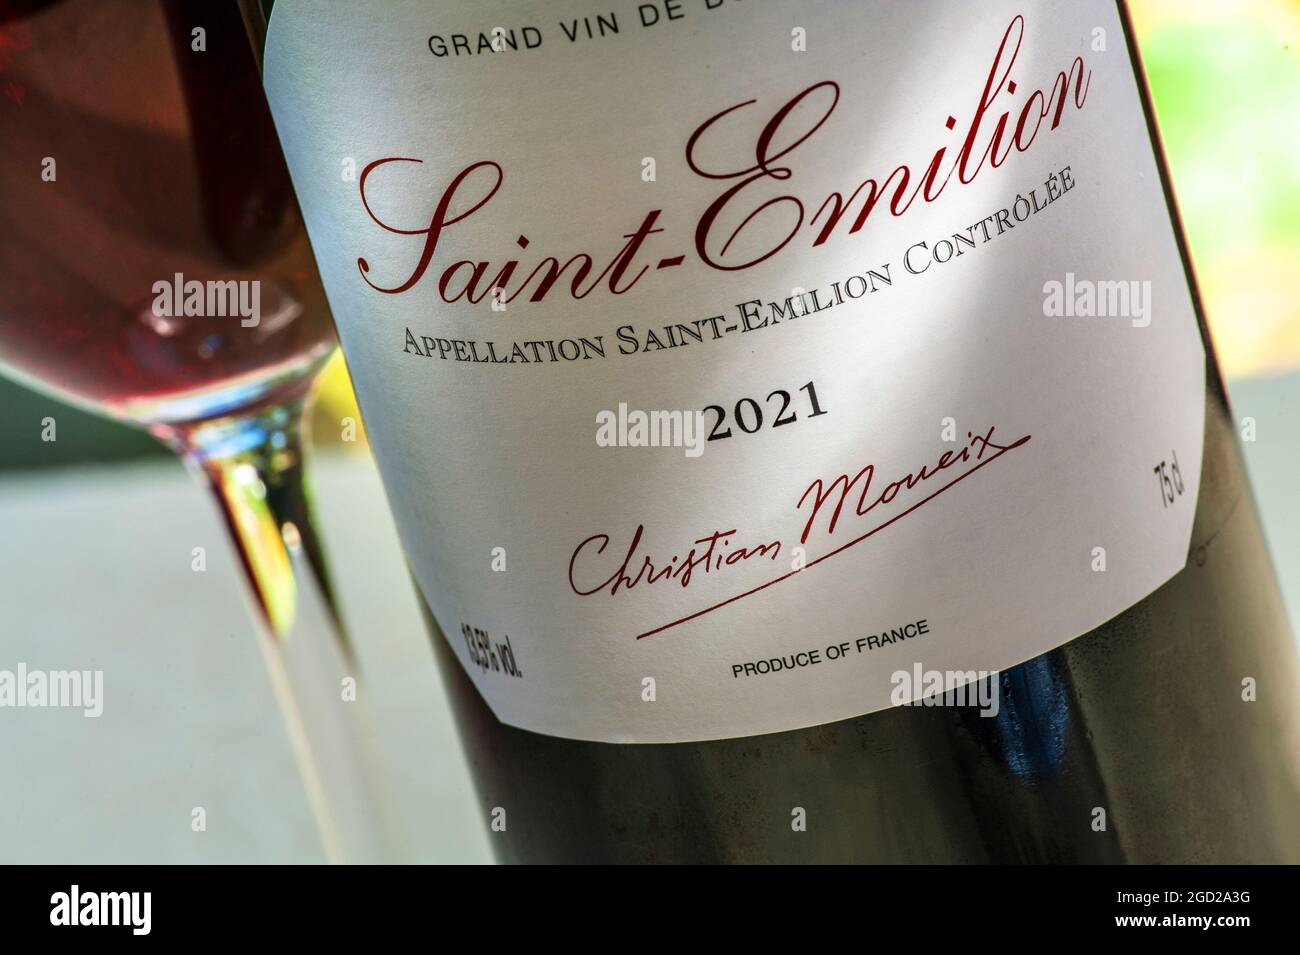 Saint Emilion bouteille de vin étiquette de Saint-Emilion 2021 (date d'avance) vin rouge produit par le célèbre Christian Moueix Libourne Pomerol Bordeaux France Banque D'Images